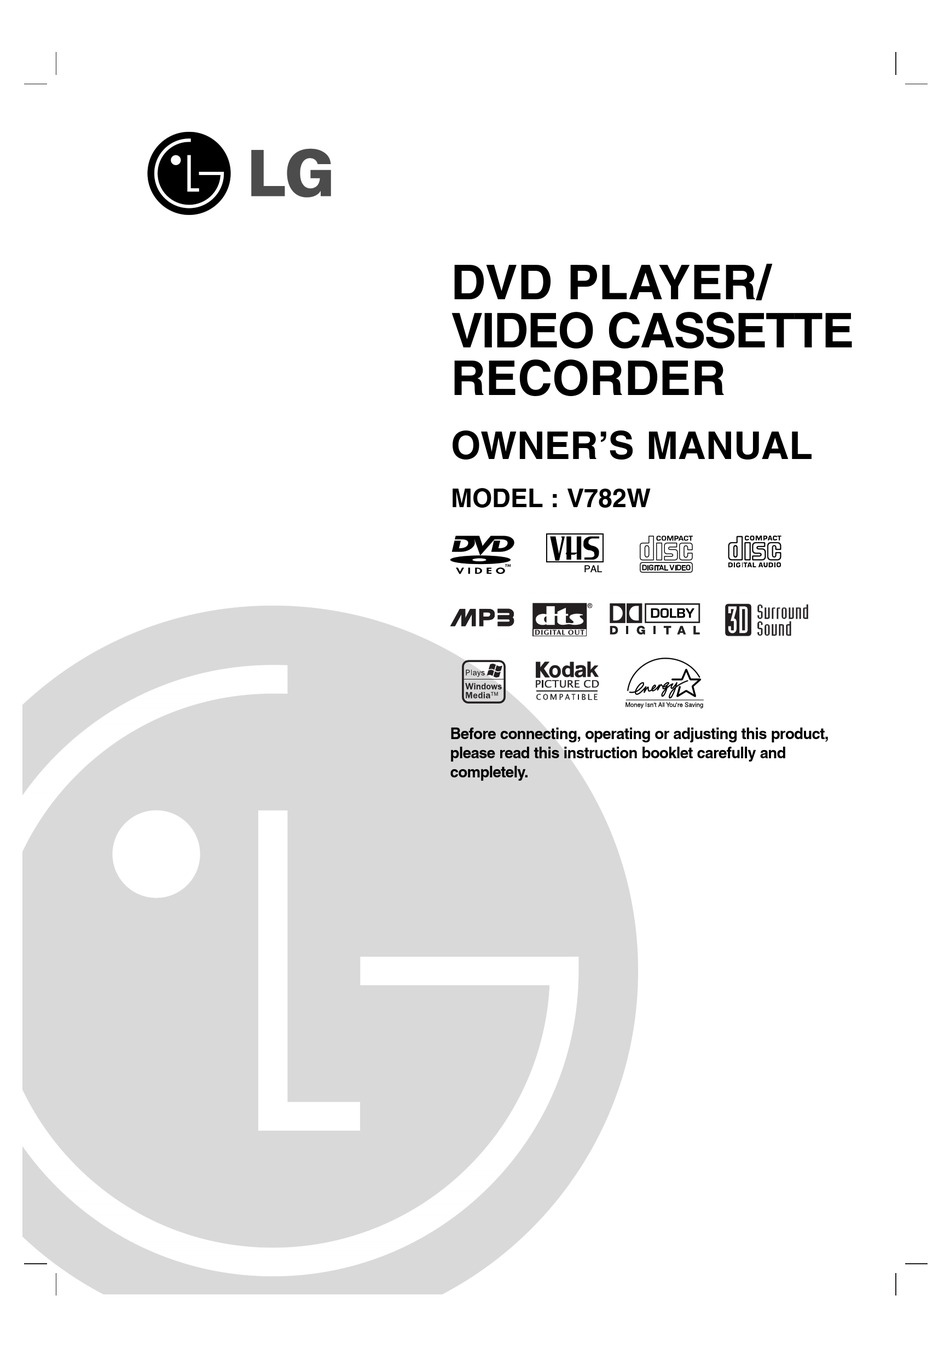 Lecteur DVD LG LGDVB418 pas de télécommande ni d'instructions